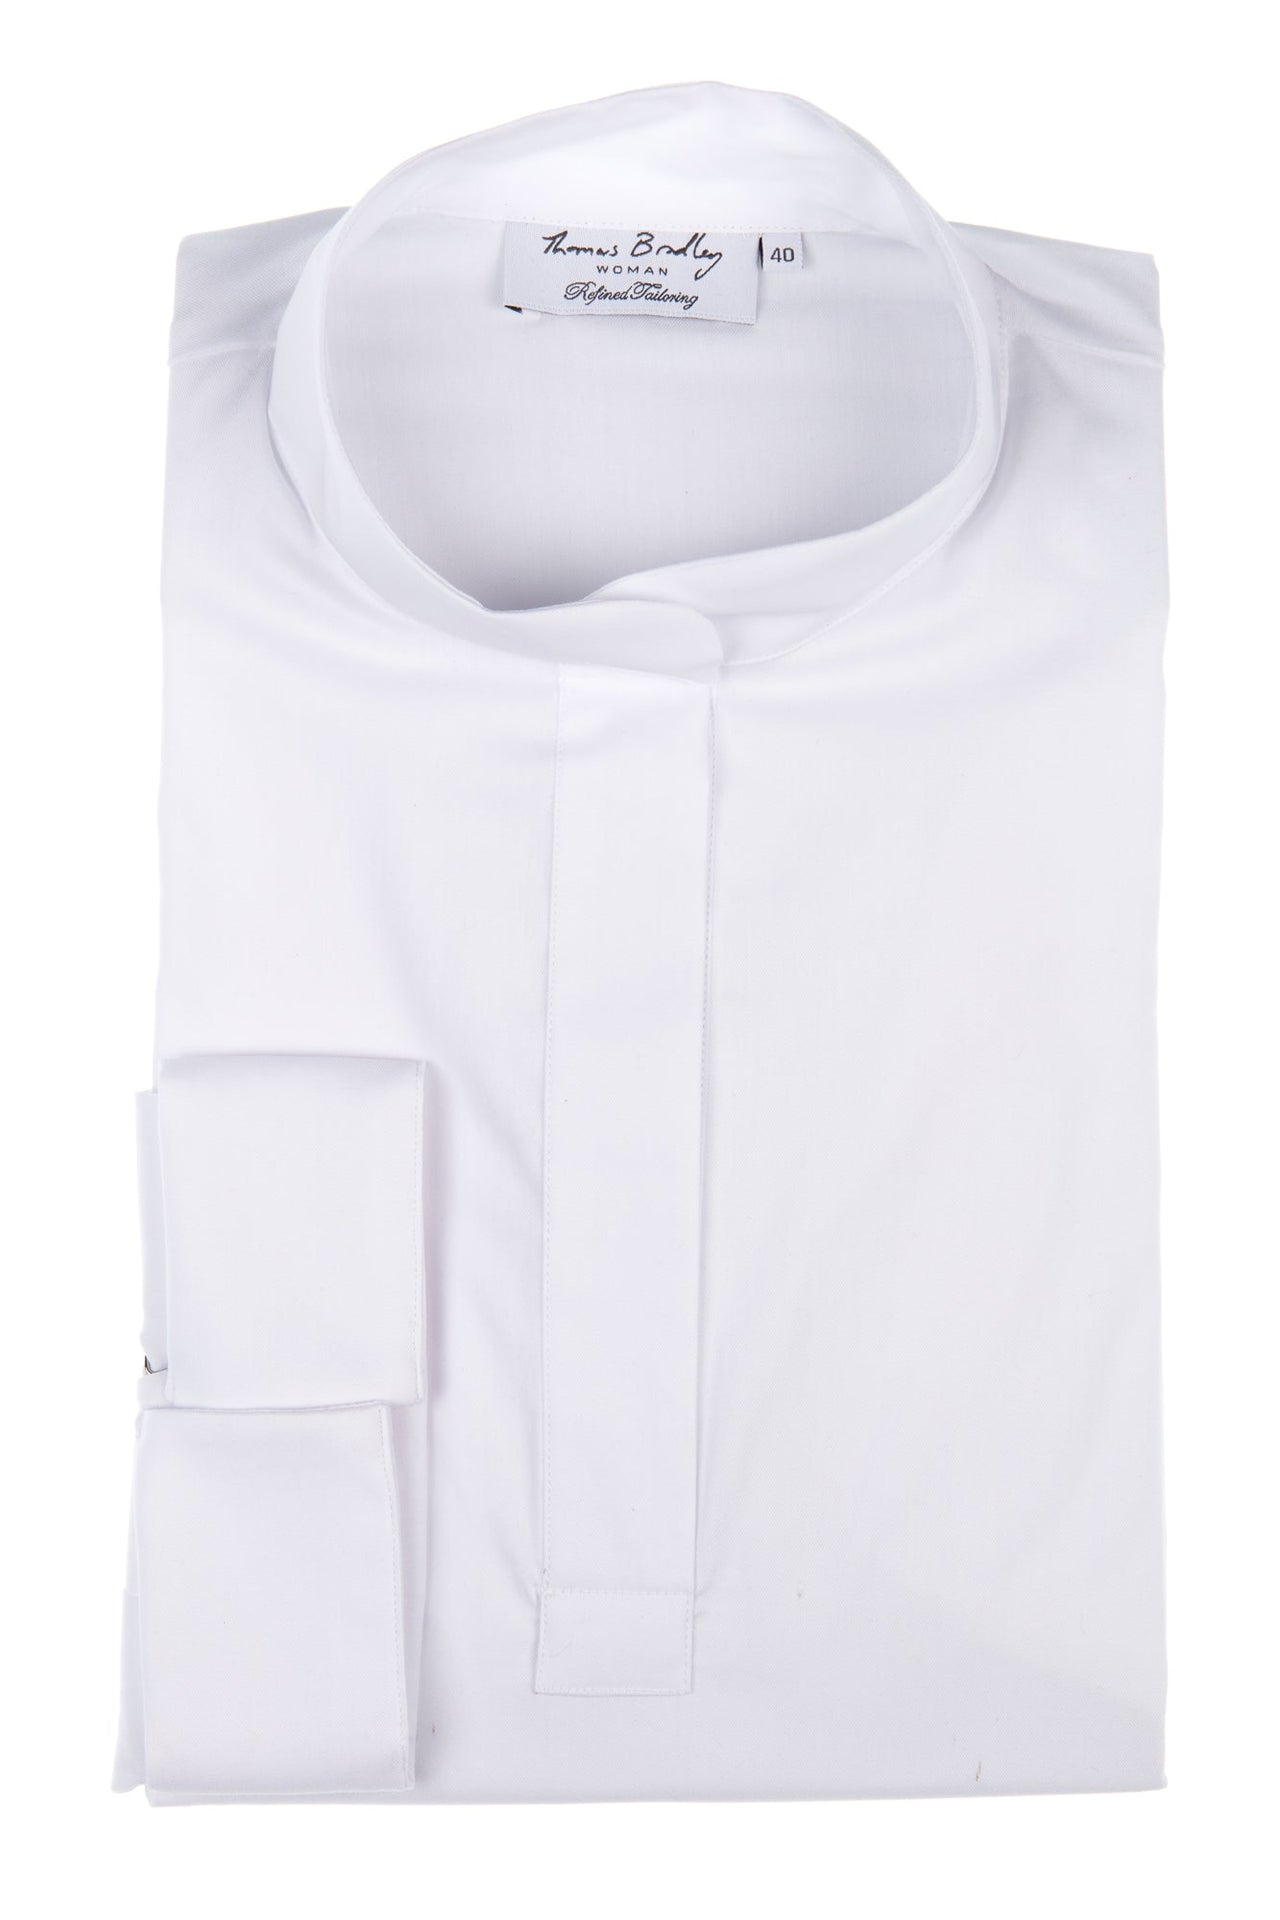 Effen witte blouse in losmodel